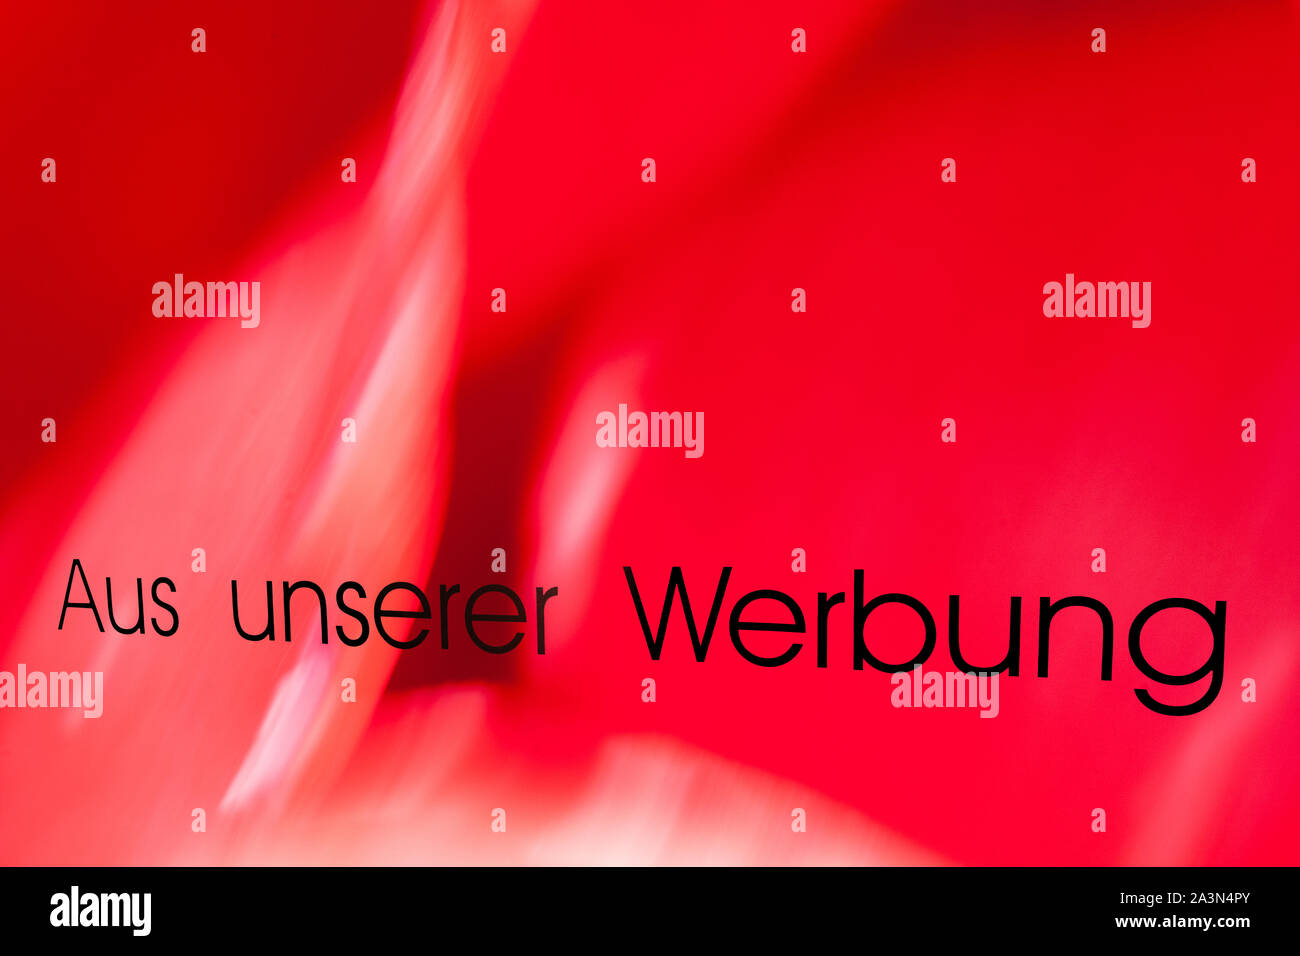 Mots allemand aus unserer Werbung, traduit de notre publicité Banque D'Images